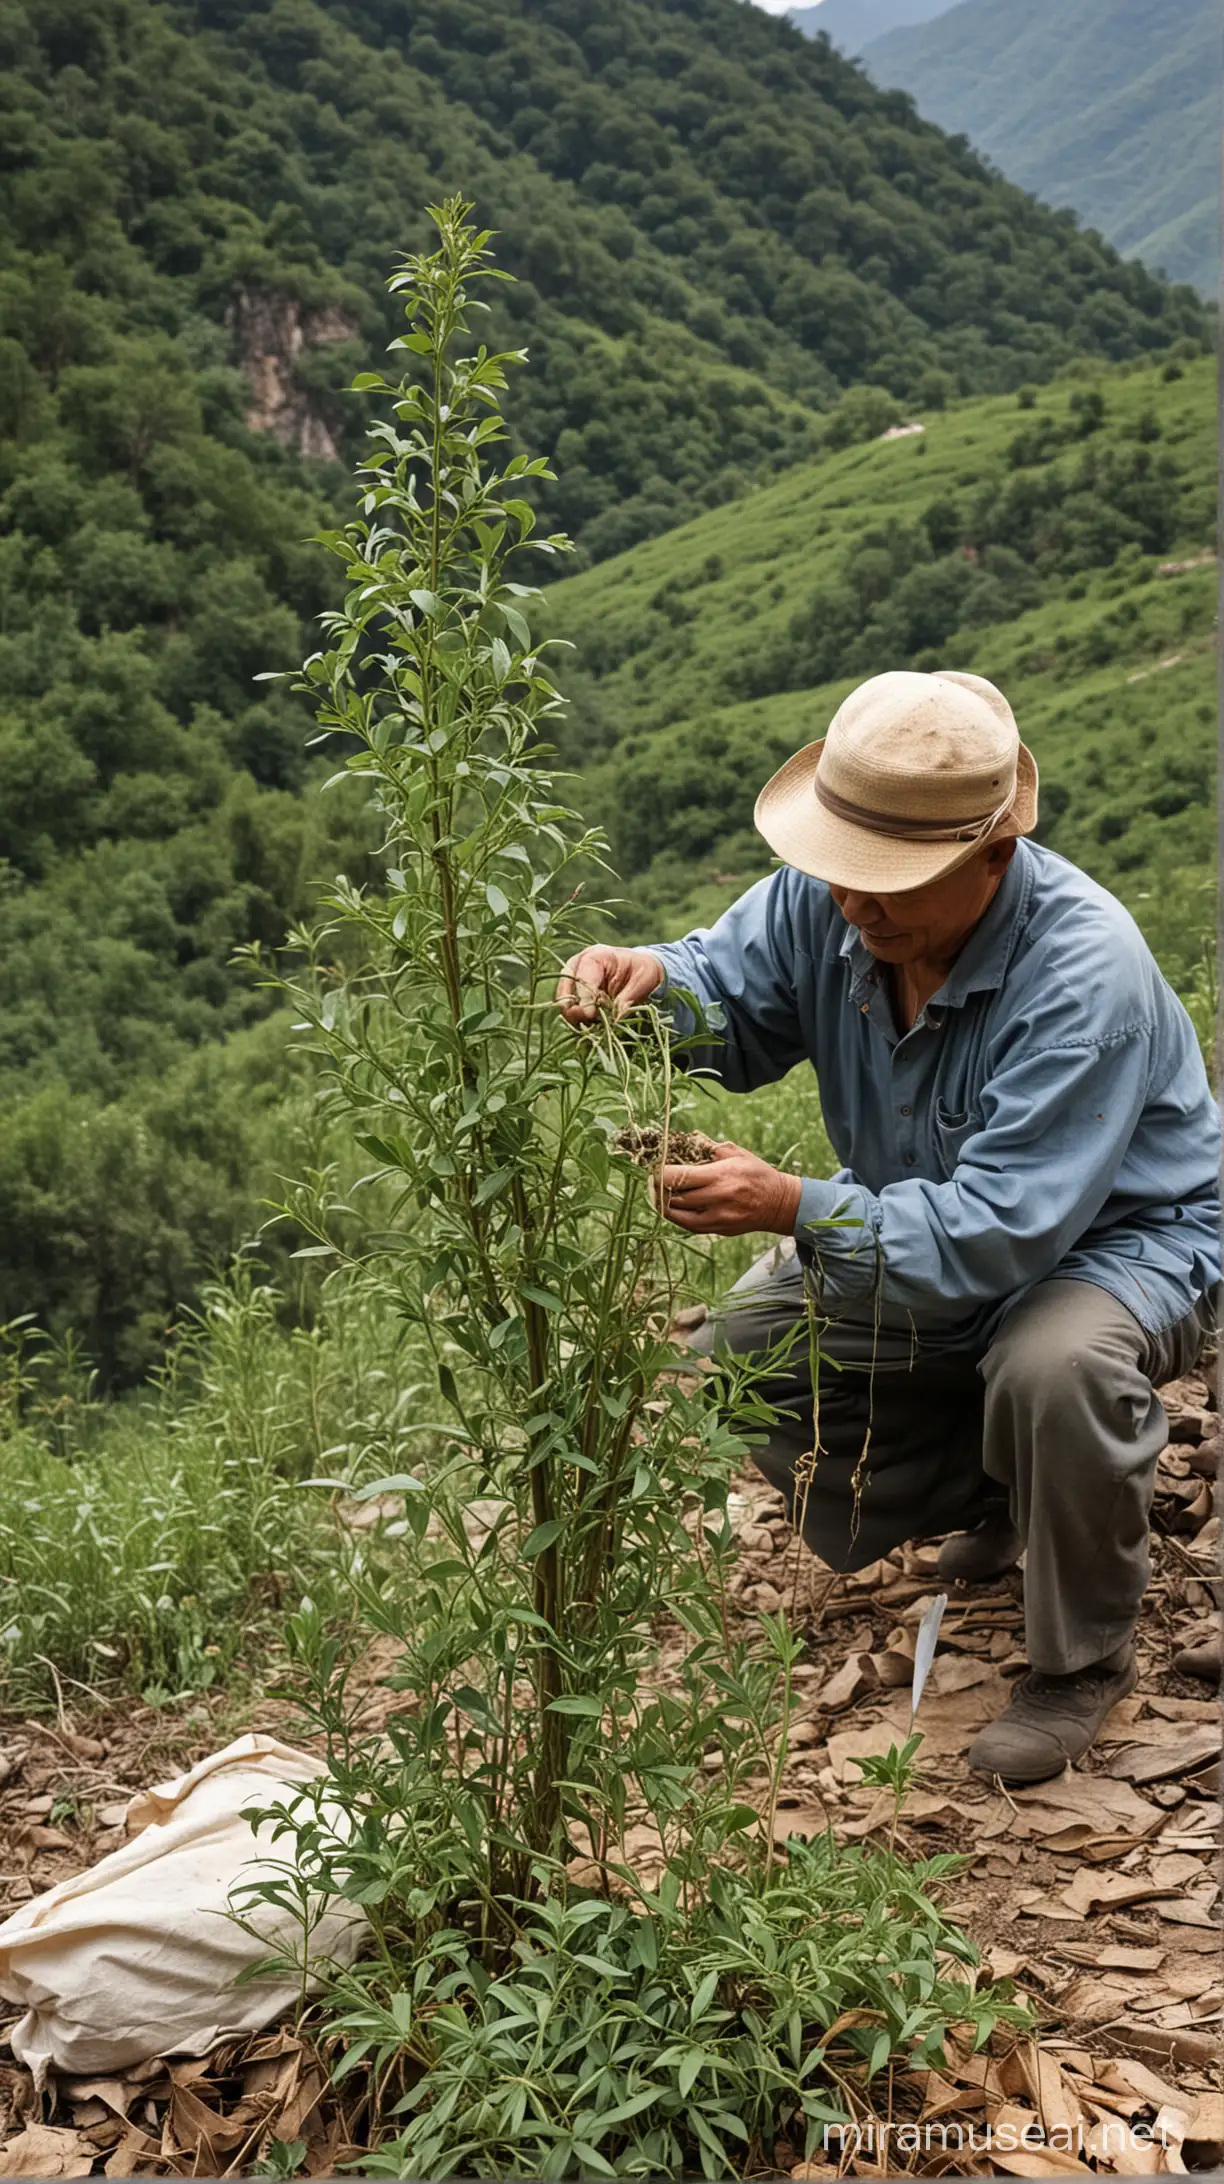 Mountain Herbalist Harvesting Chinese Herbal Plants